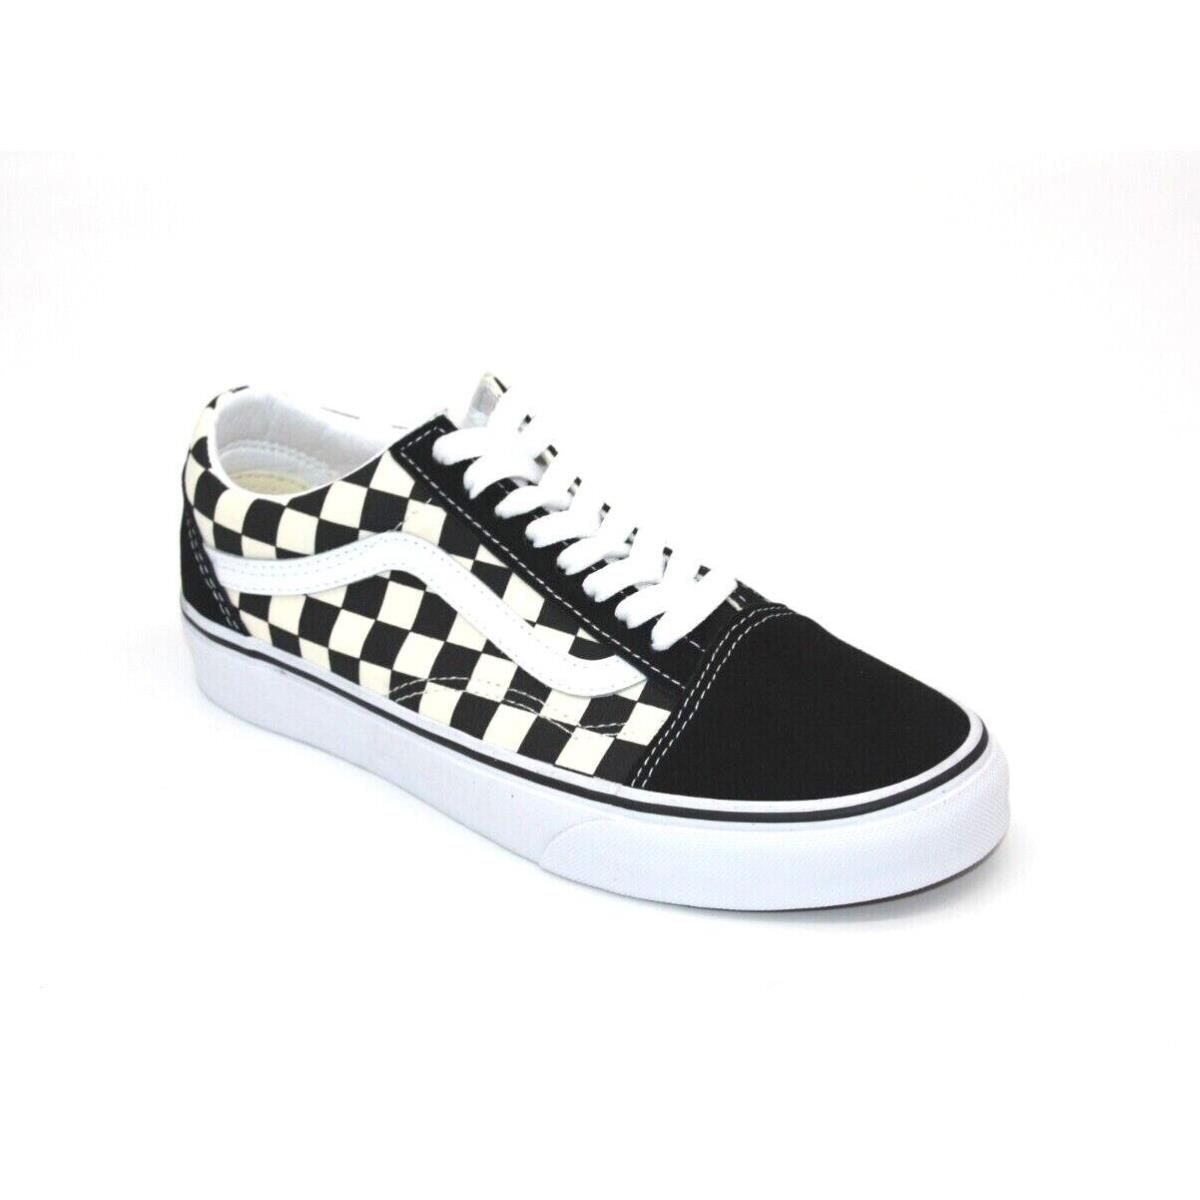 Vans Old Skool Low Primary Checkered Black White Unisex Skateboarding Shoe